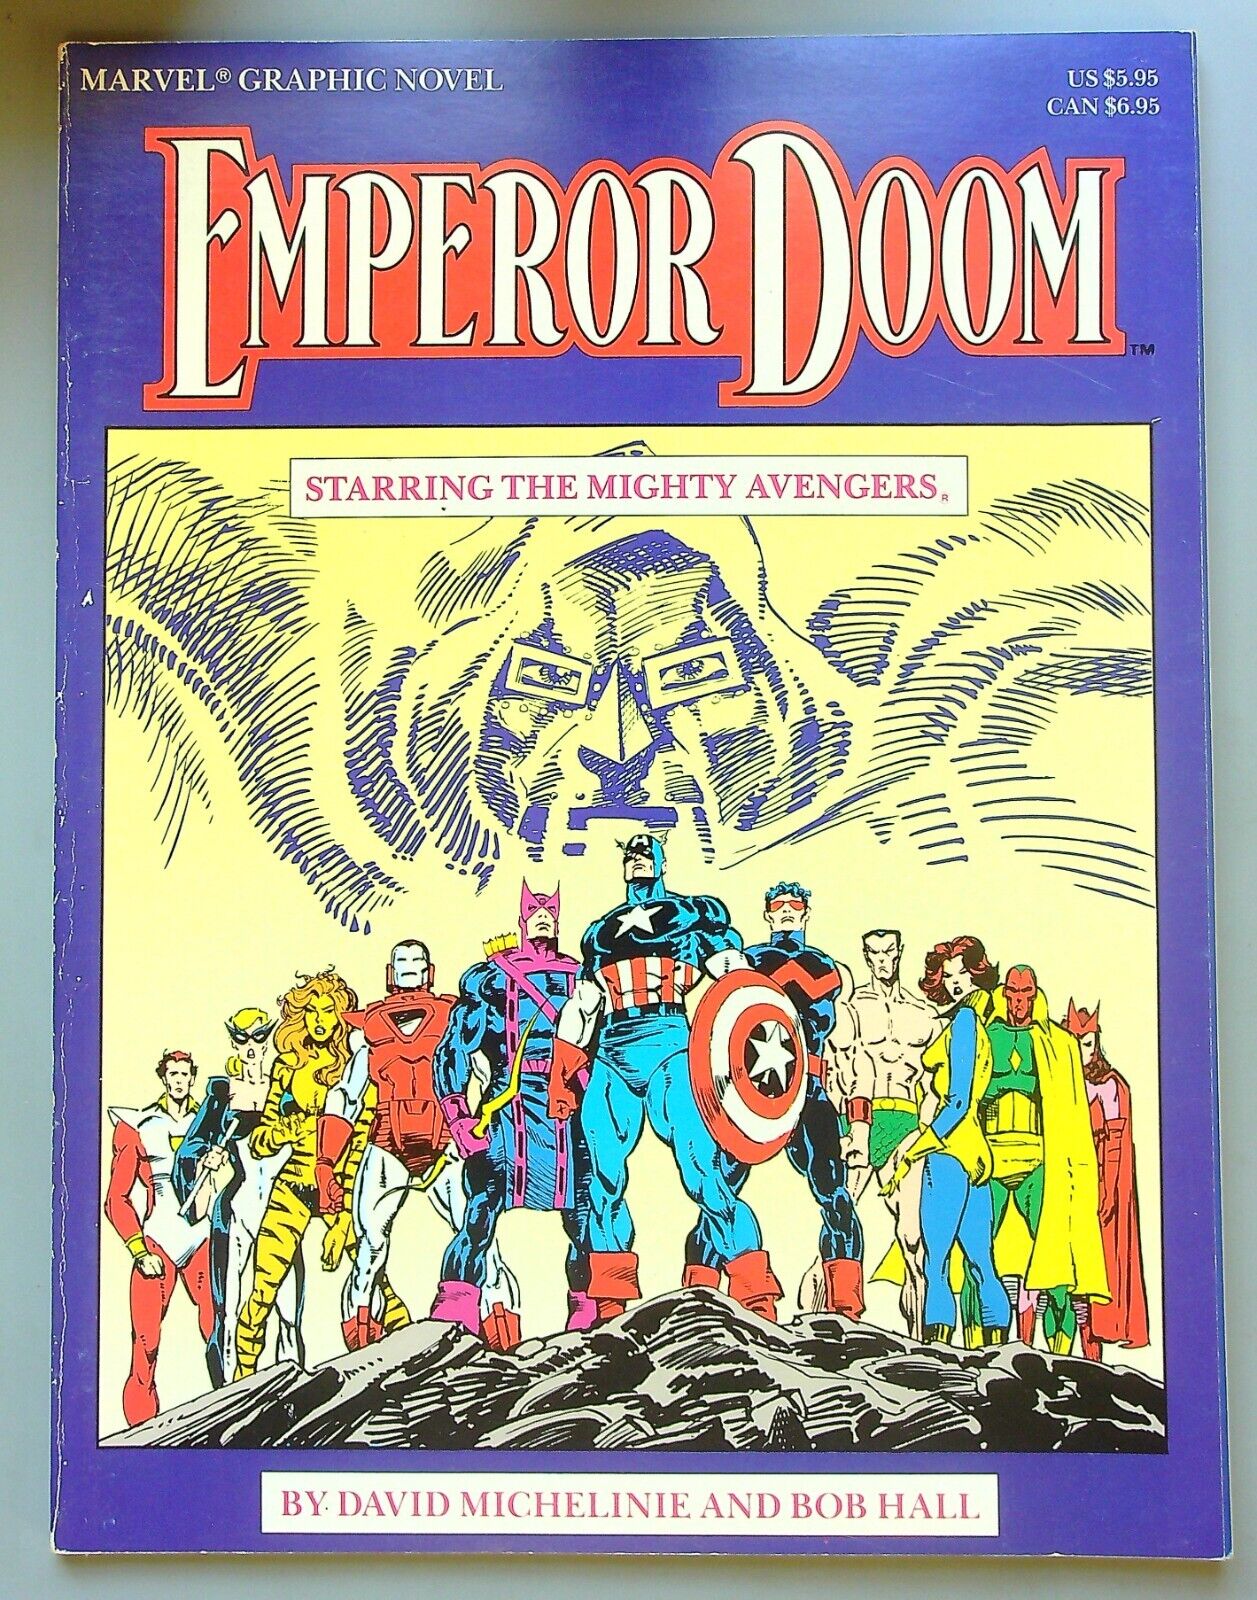 Marvel Graphic Novel: EMPEROR DOOM ~ 1987 ~ AVENGERS FN